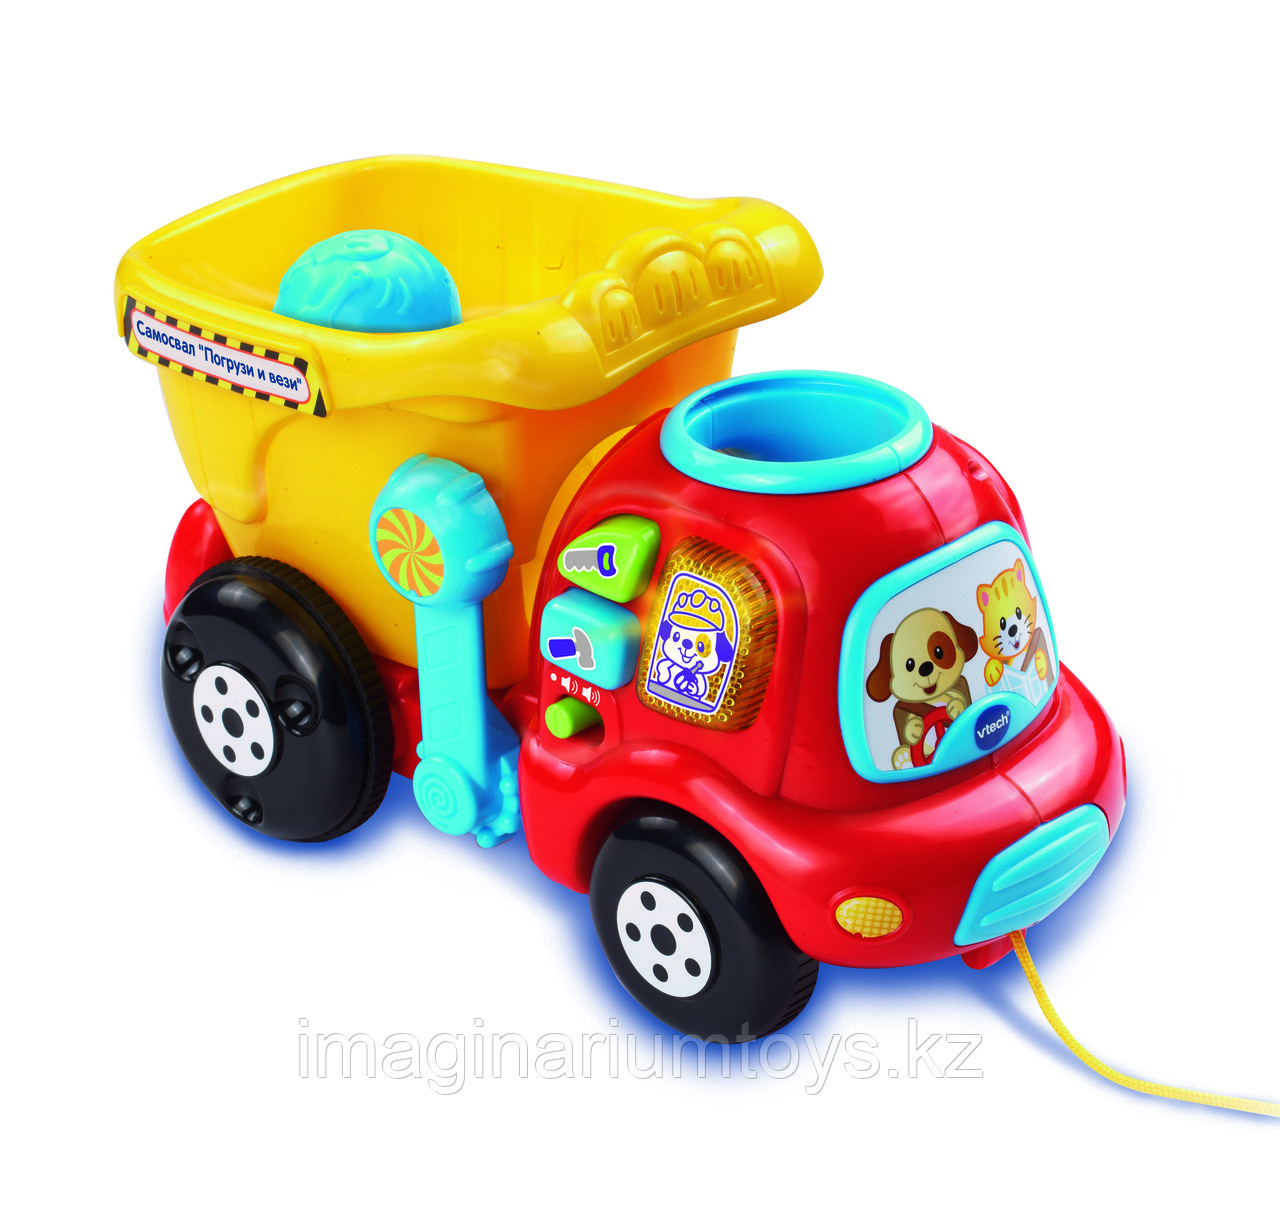 Интерактивная развивающая игрушка для малышей «Самосвал»  VTech, фото 1